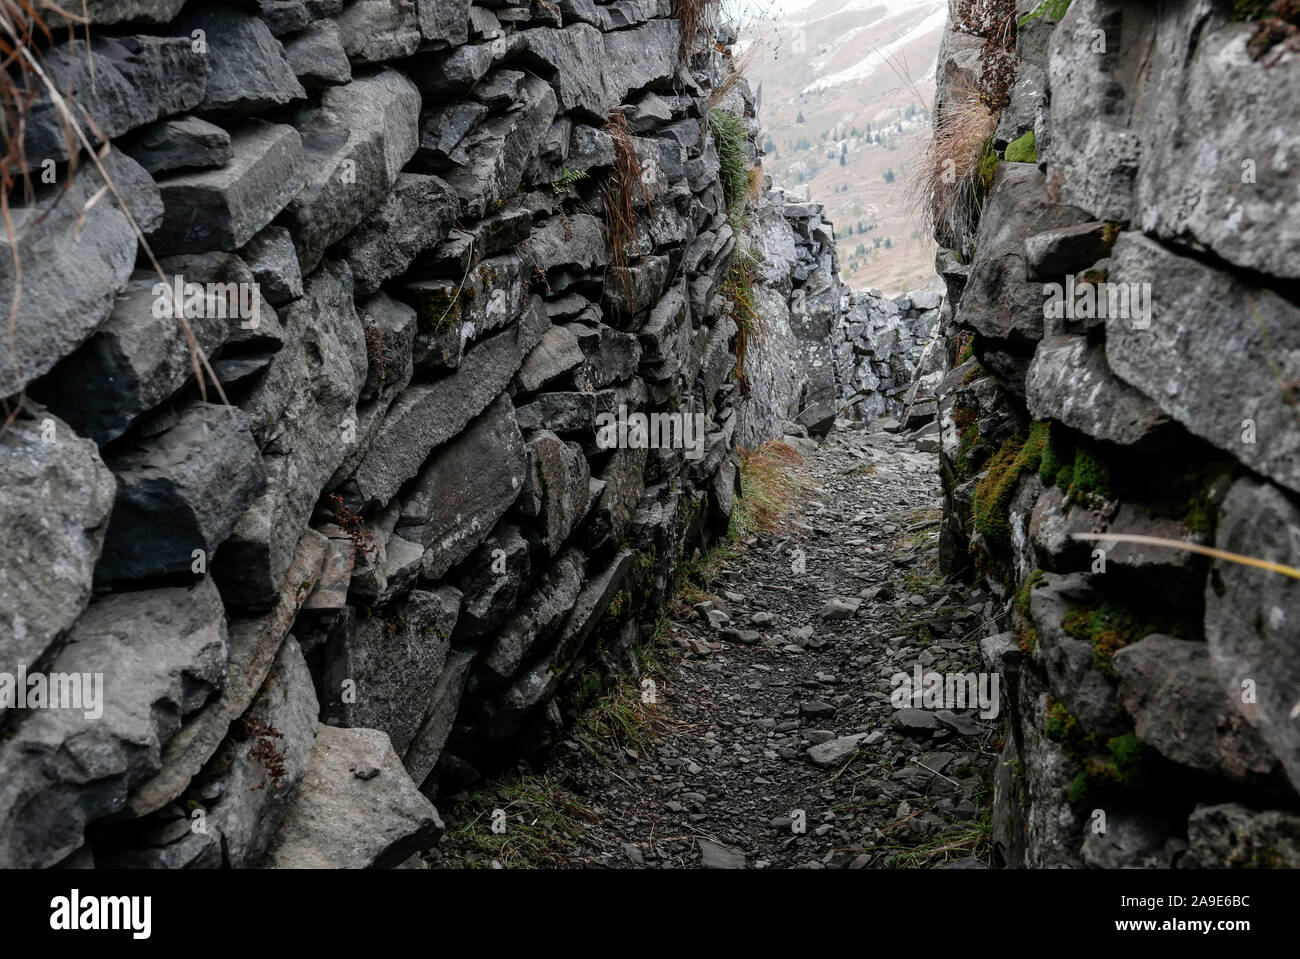 Trench in the Col di Lana above the Siefsatttel, Fanes, Belluno Stock Photo  - Alamy